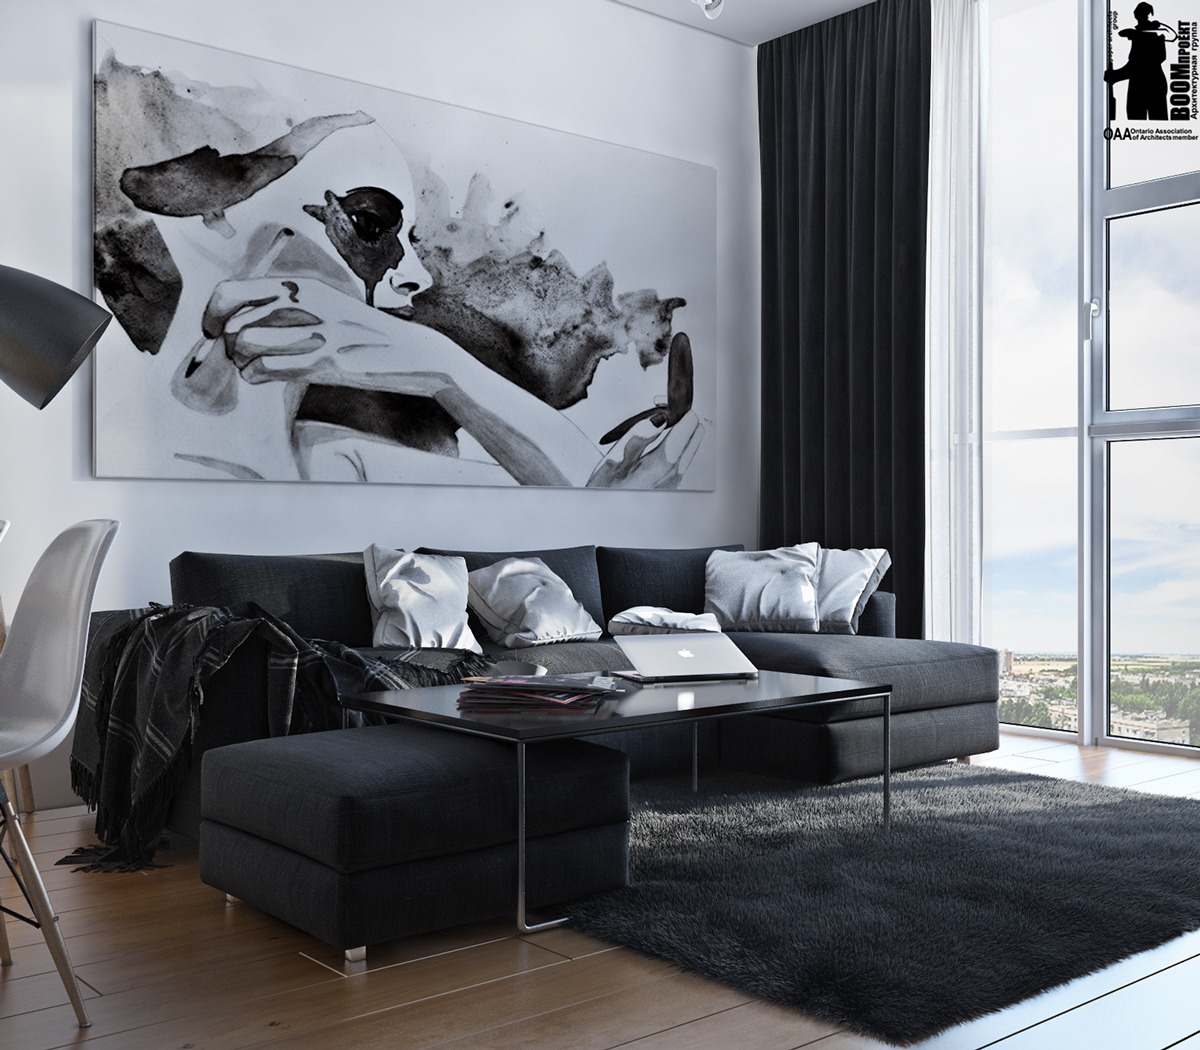 black and white interior design idea